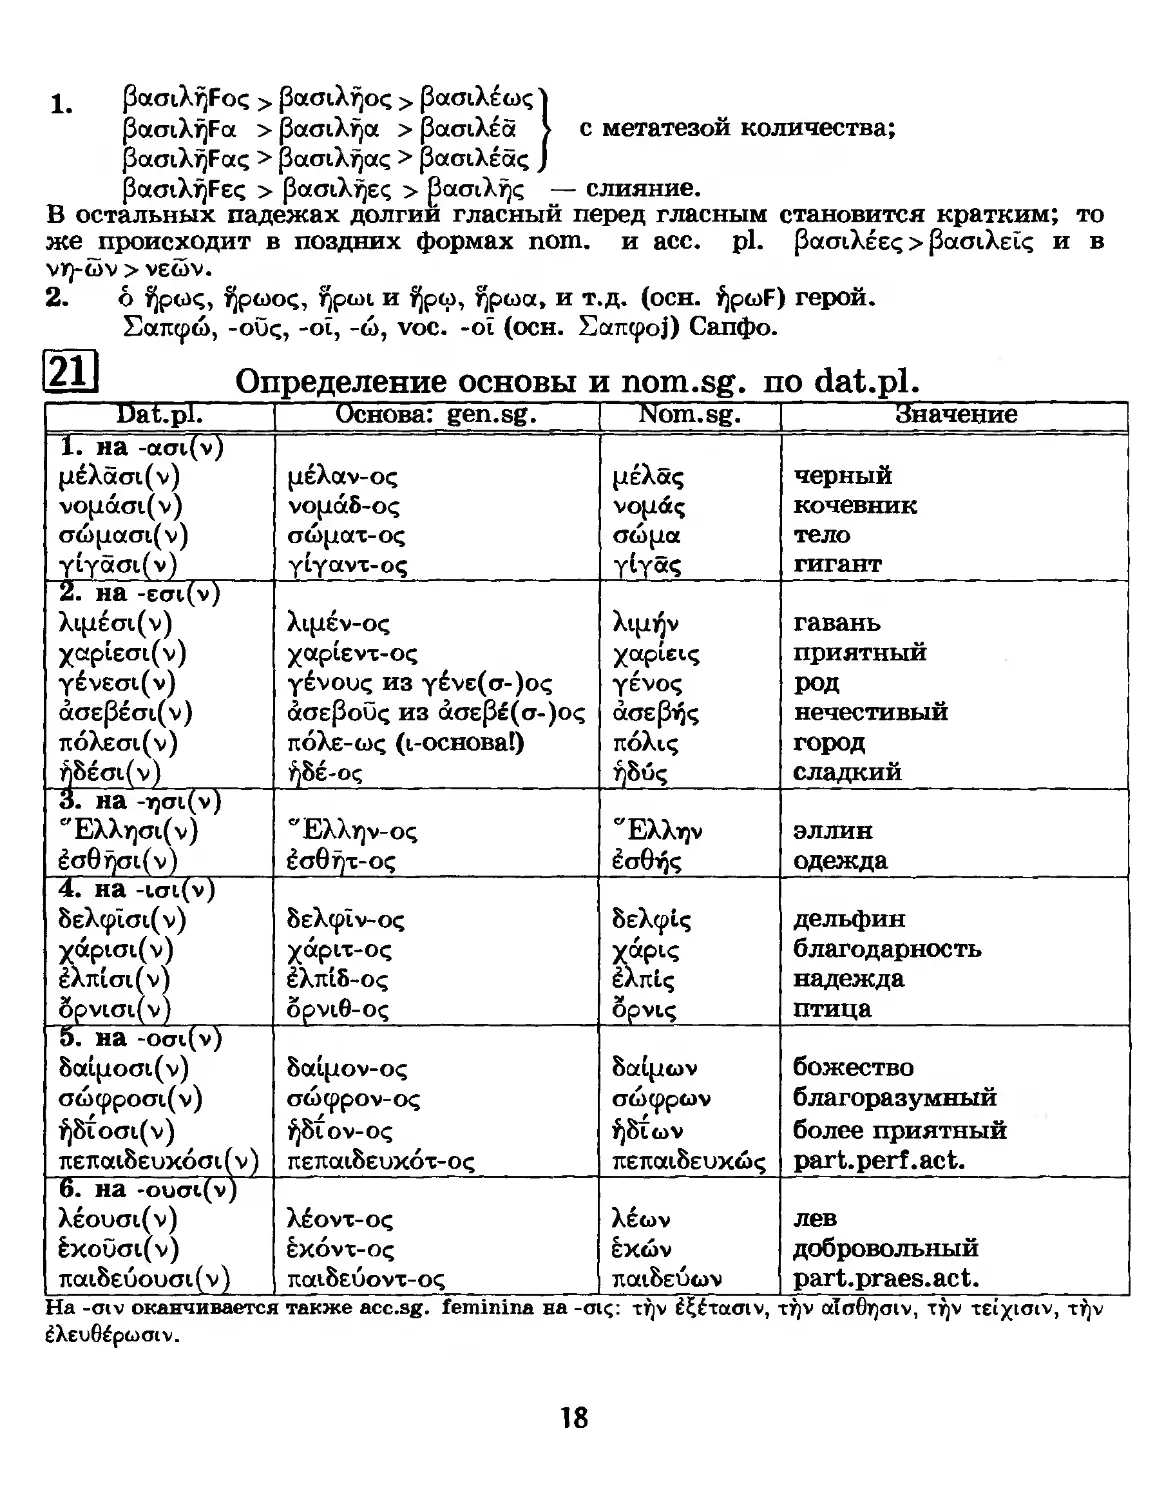 21. Определение основы и nom.sg. по dat.pl